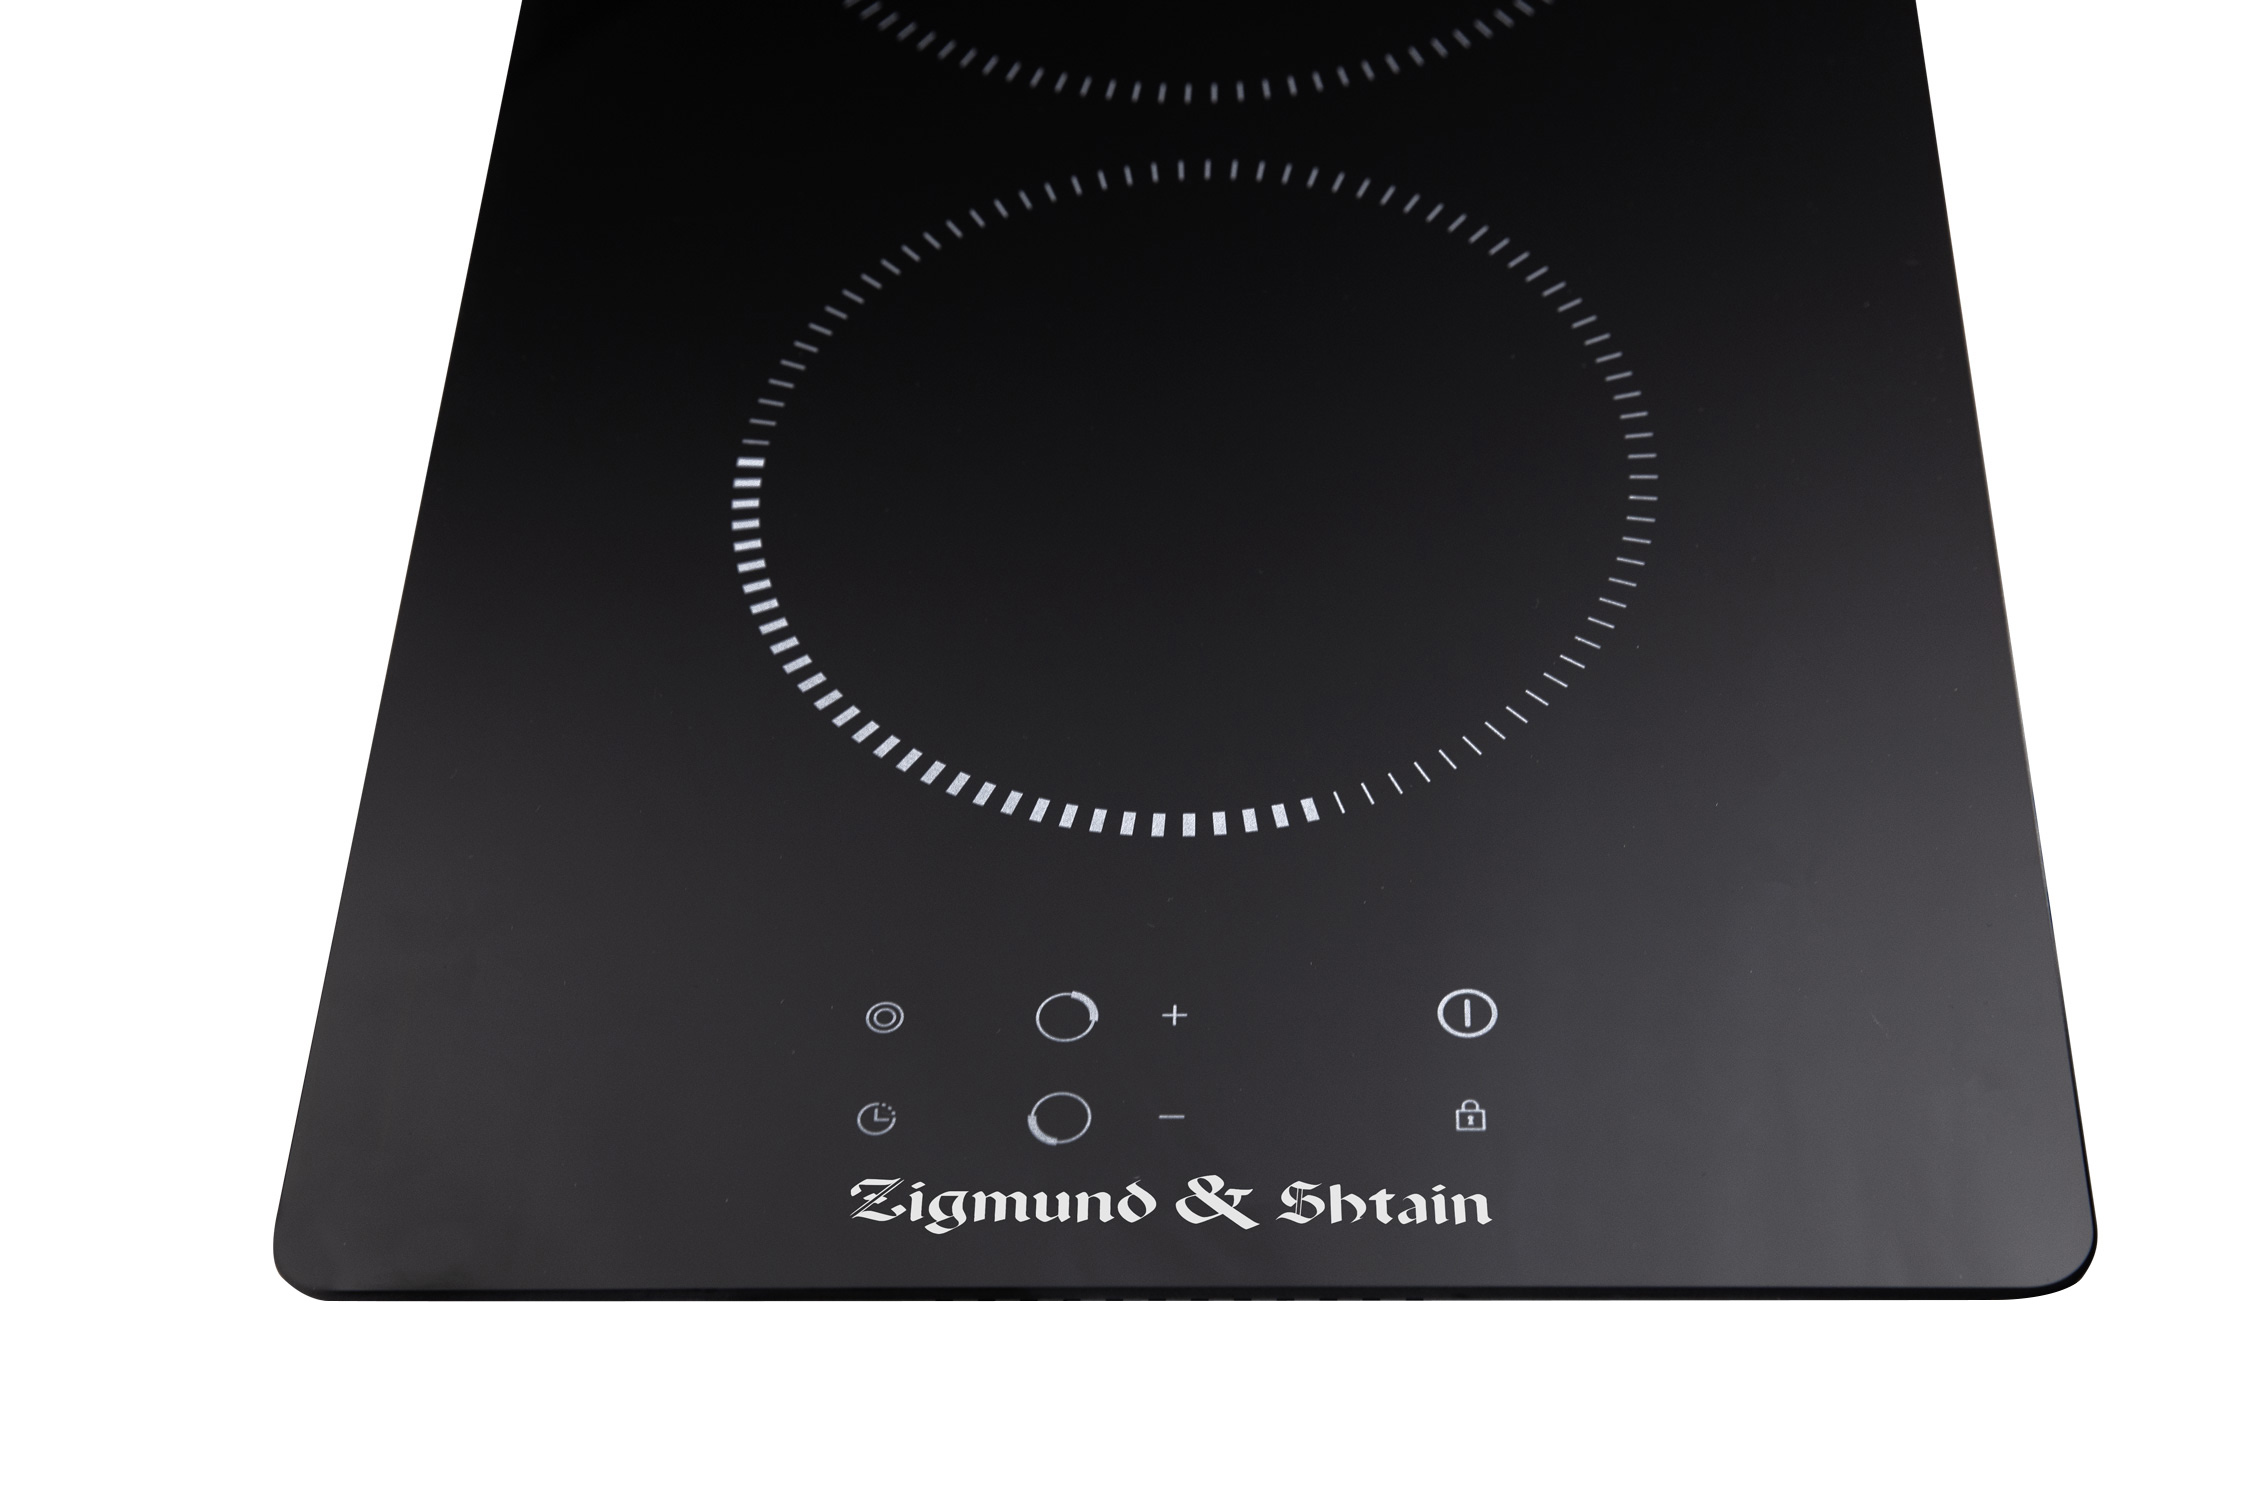 Zigmund shtain ch. Стеклокерамическая поверхность Zigmund & Shtain CN 36.3 B. Zigmund & Shtain CNS 025.60 BX. Электрическая варочная панель Zigmund & Shtain CN 36.3 W.